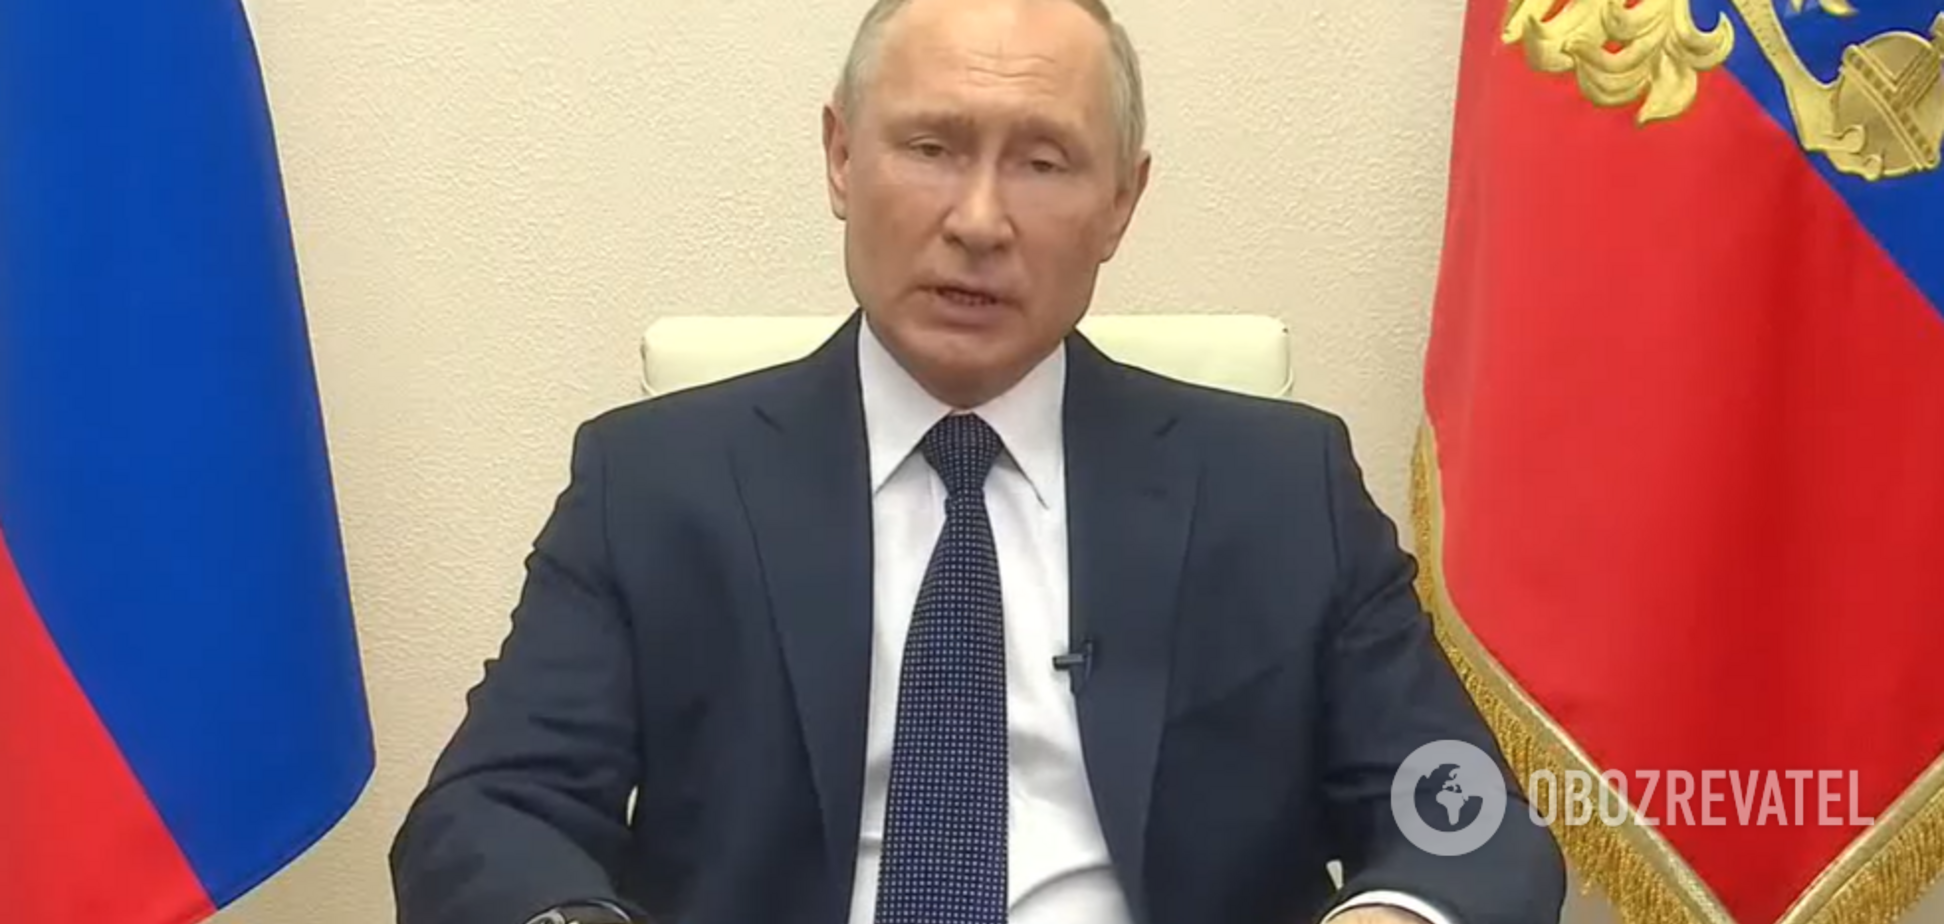 У Путина проблемы со здоровьем? В обращении главы РФ подметили нюанс